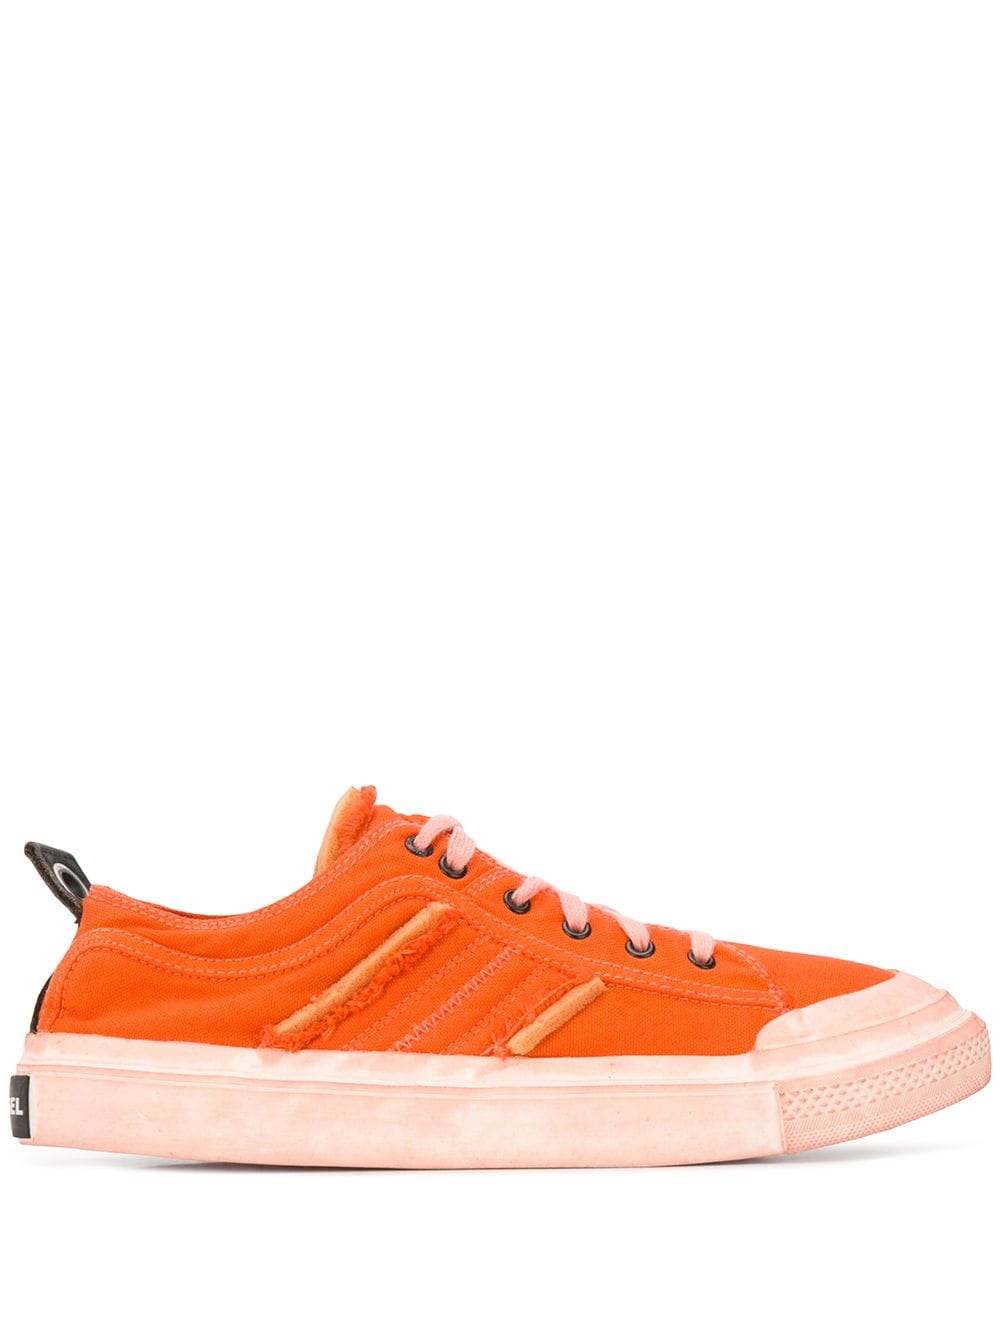 Diesel Pigment-dyed Sneakers In Orange